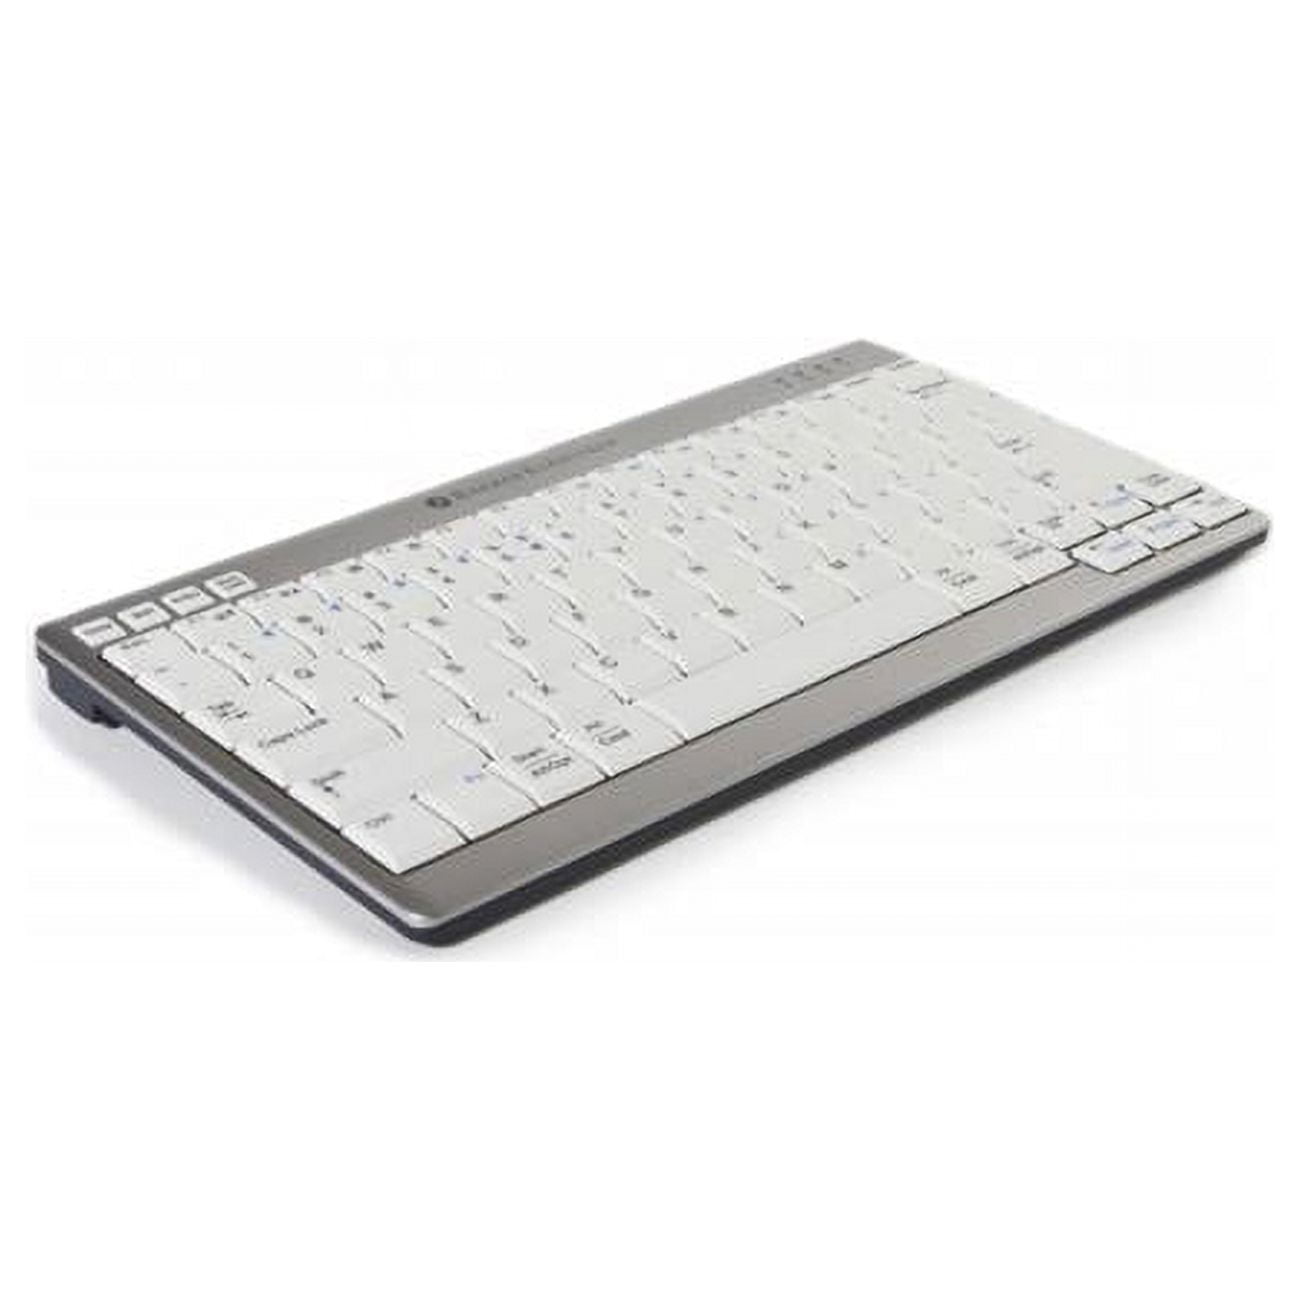 Picture of Bakker Elkhuizen BNEU950WUS Ultra Board 950 Compact Wireless US Keyboard